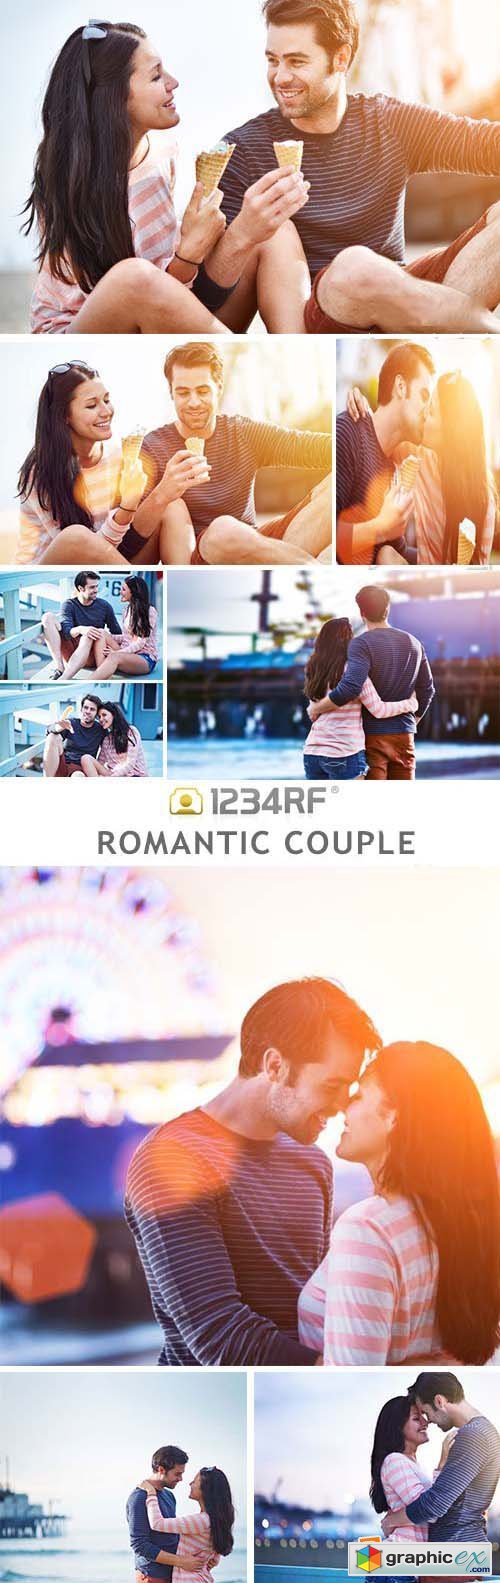 Romantic Couple - 26xJPG